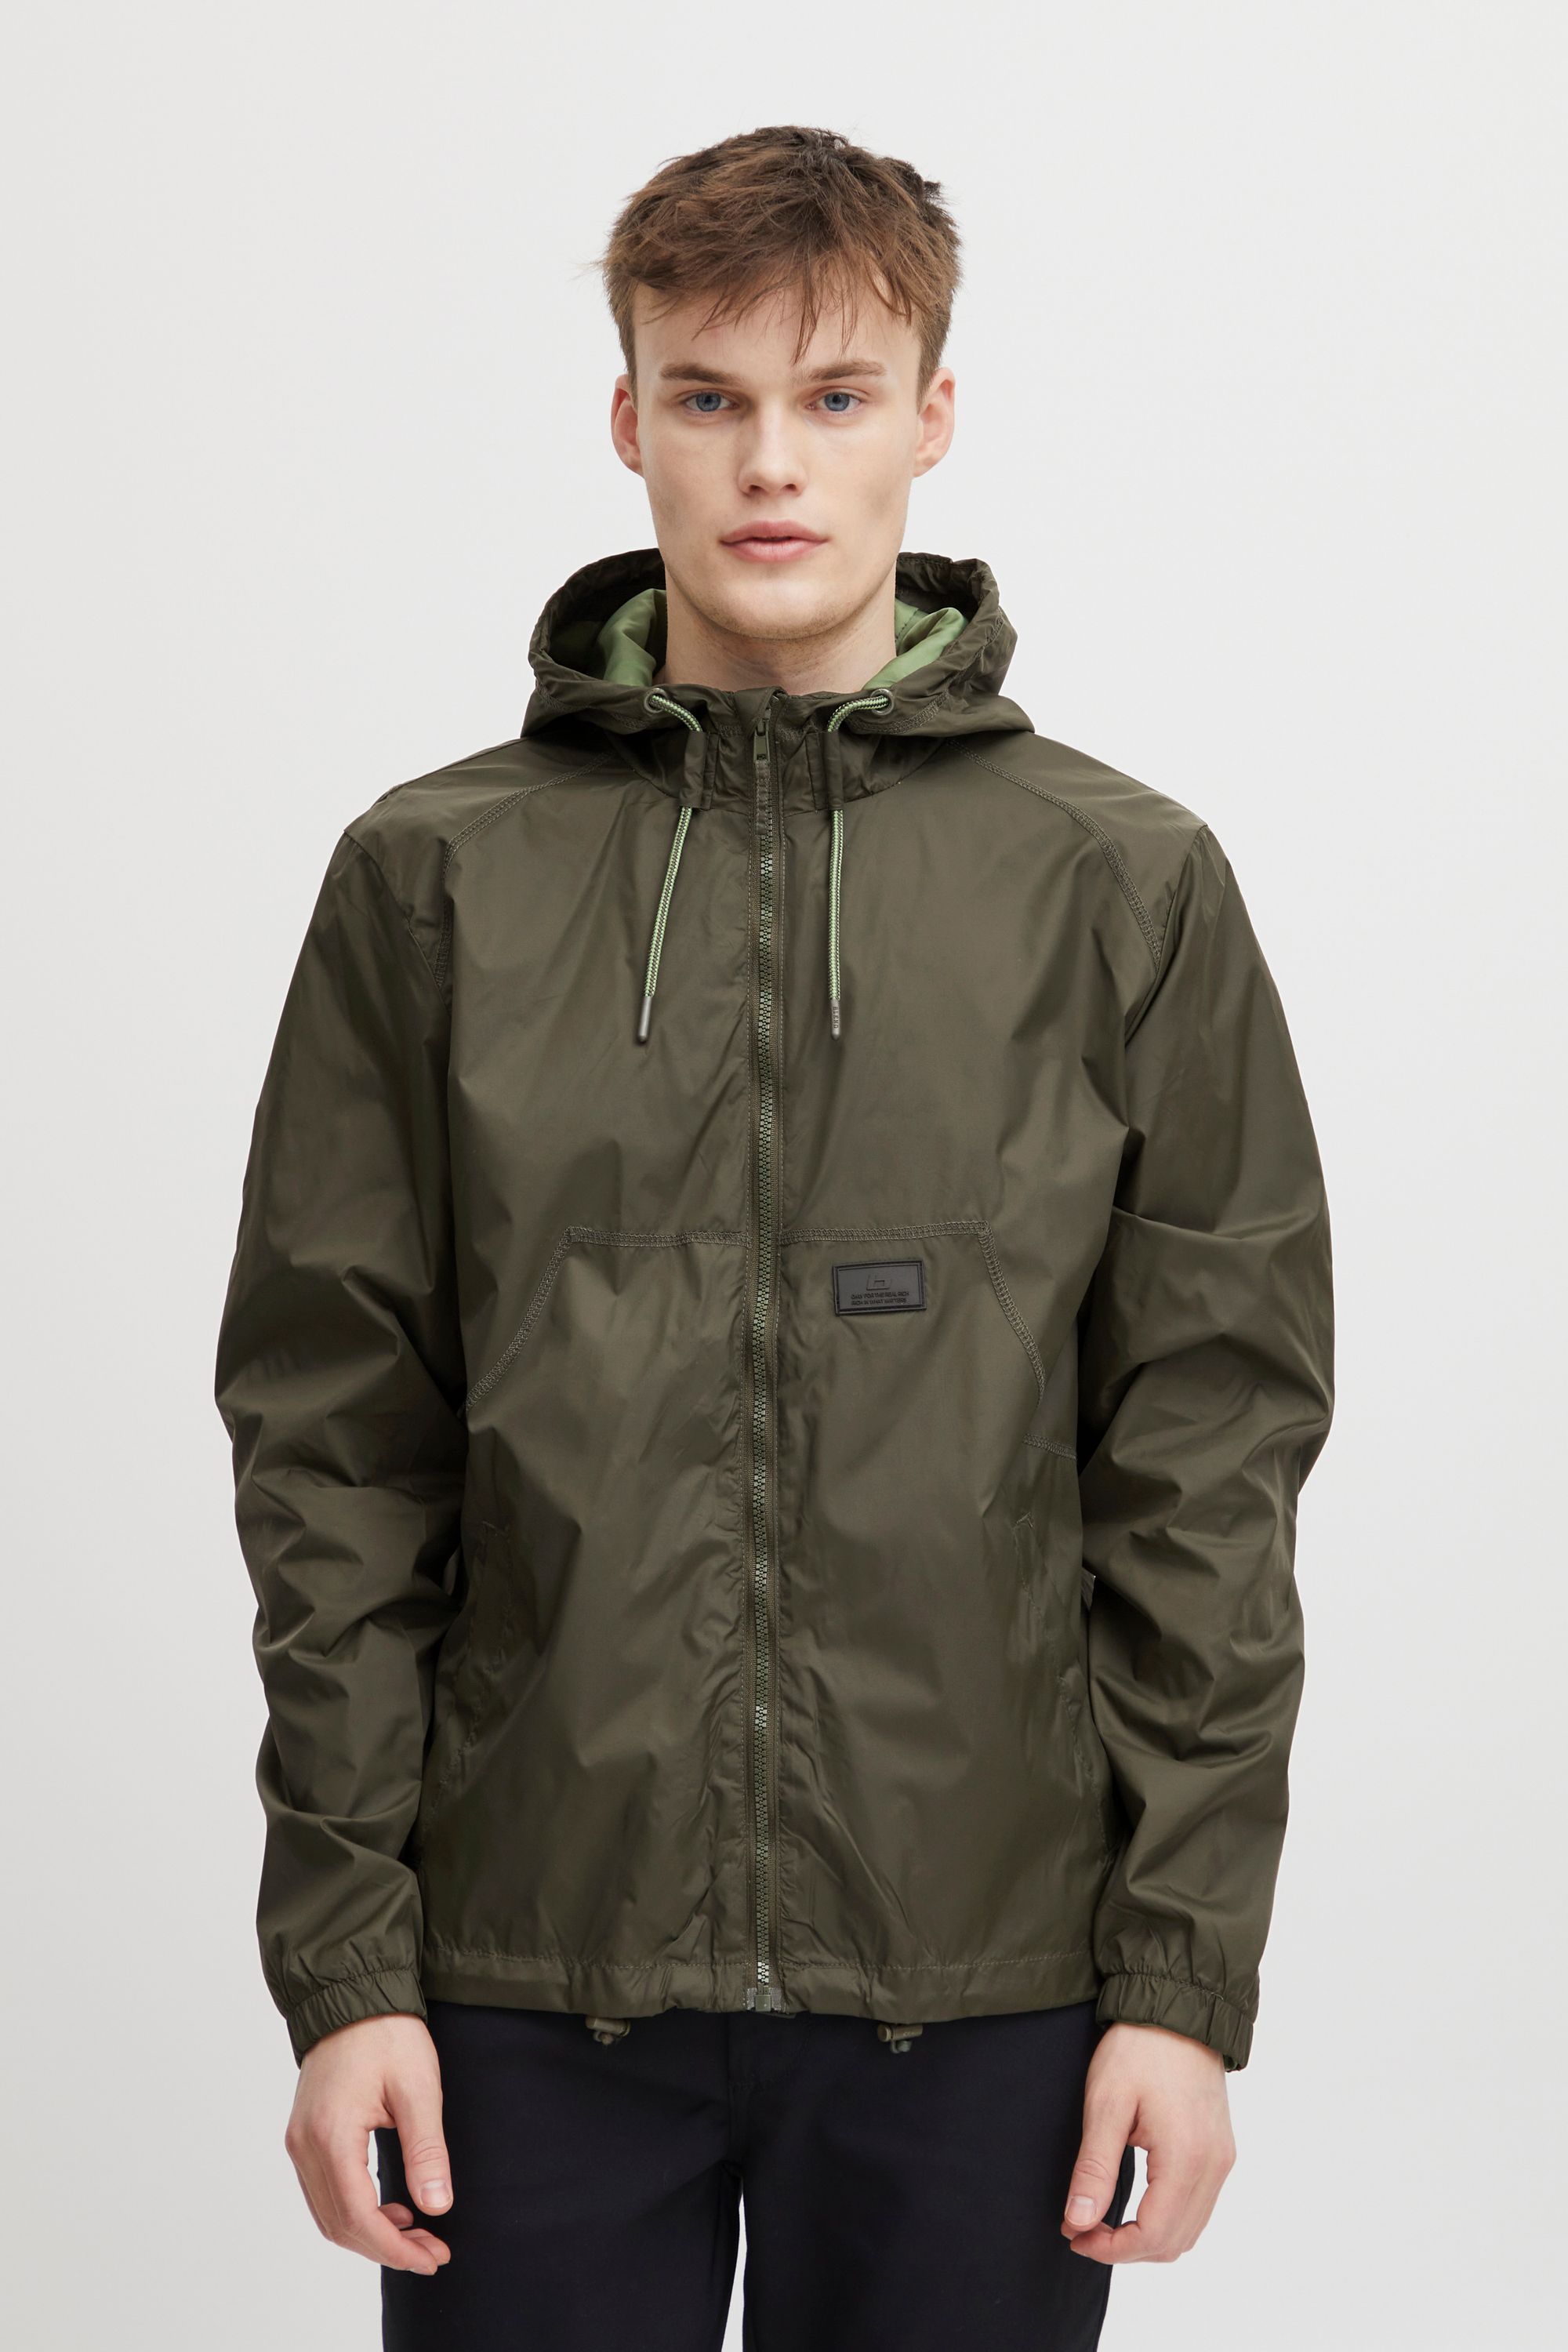 Куртка BLEND Regenjacke BHOuterwear 20715503, зеленый куртка blend kurzjacke bhouterwear 20715931 зеленый